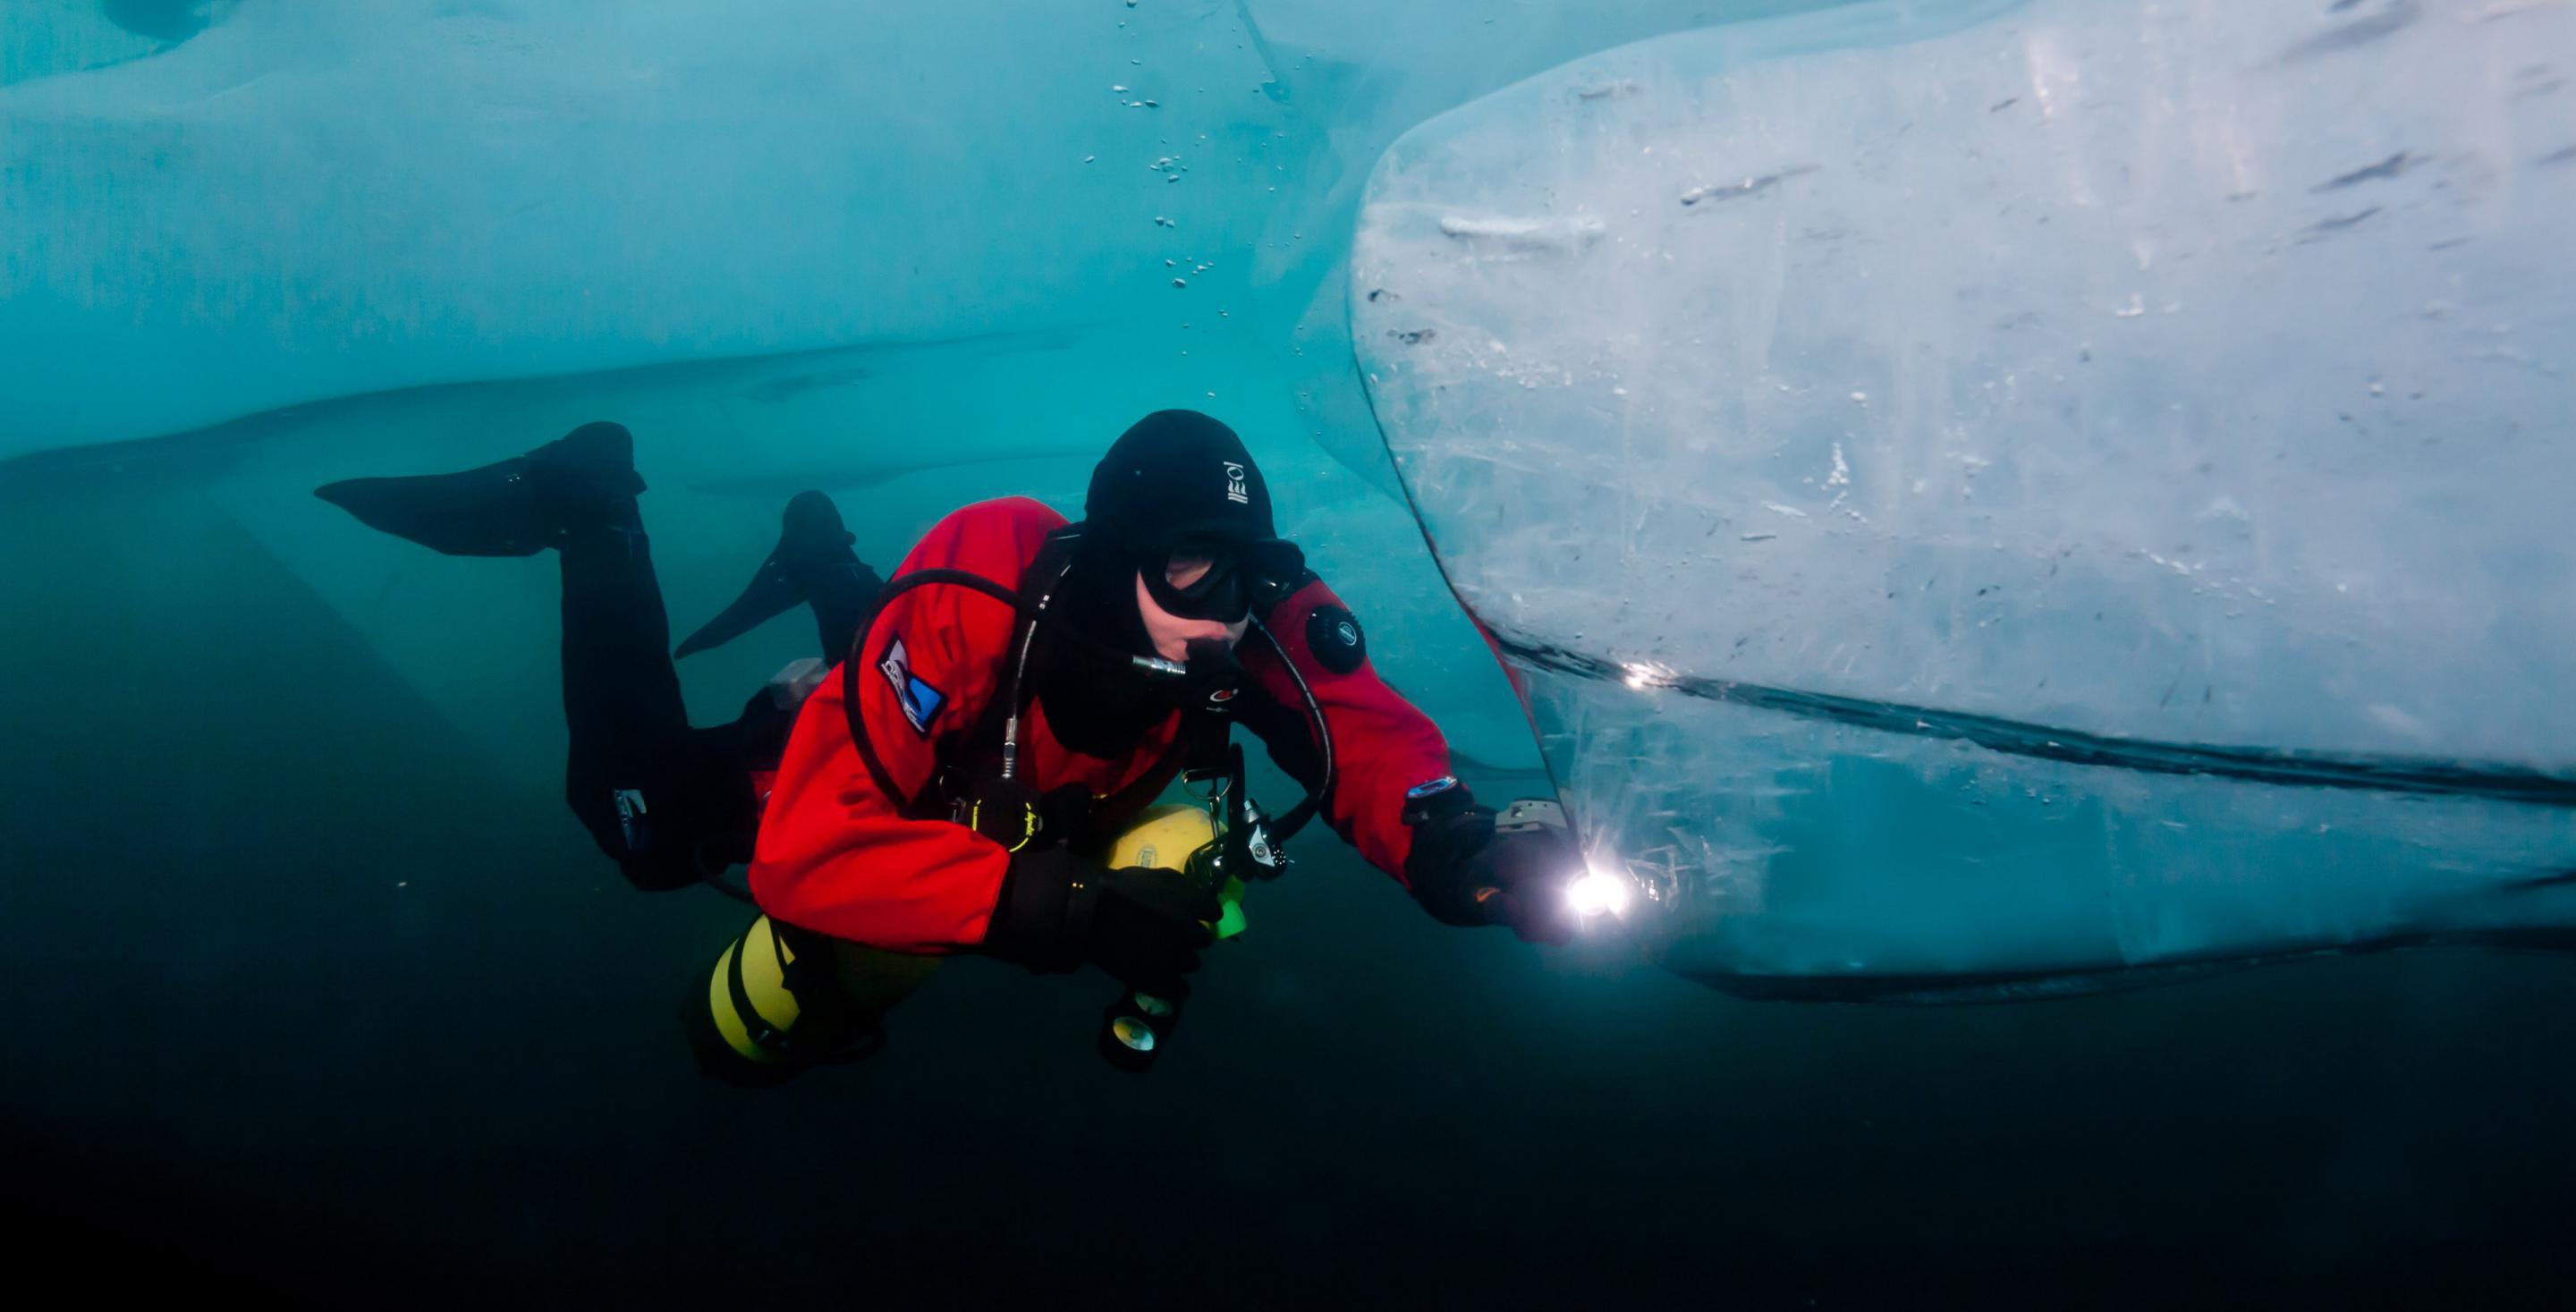 Les énormes plaques de glace forment des dédales sous la surface où il n'est pas conseillé de se promener. Le lac bouge constamment !! Lac Baïkal - Sibérie - Russie